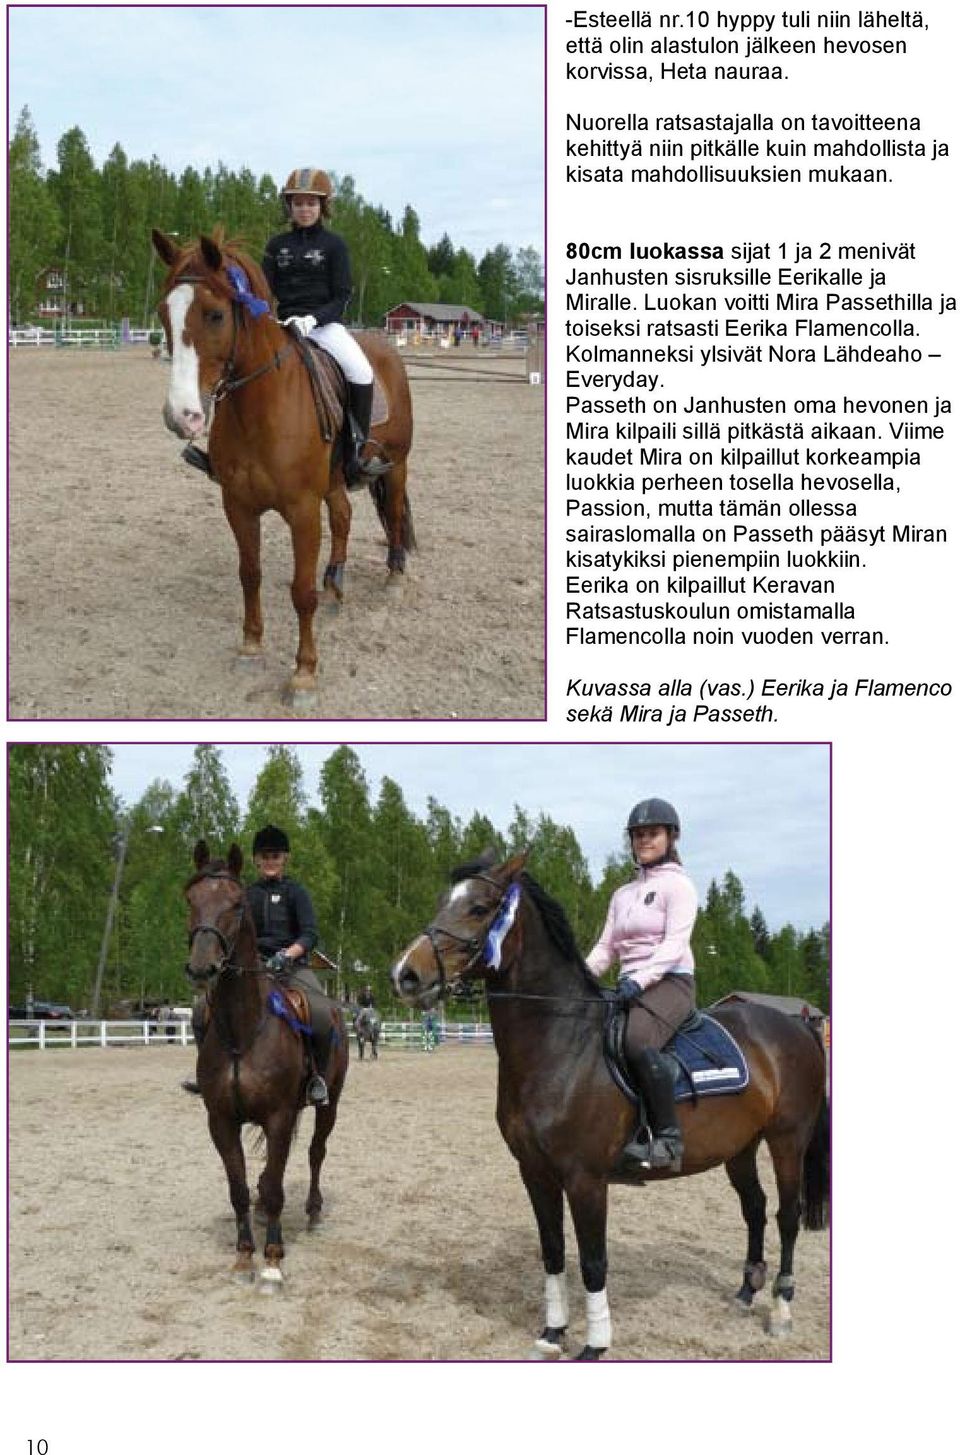 Luokan voitti Mira Passethilla ja toiseksi ratsasti Eerika Flamencolla. Kolmanneksi ylsivät Nora Lähdeaho Everyday. Passeth on Janhusten oma hevonen ja Mira kilpaili sillä pitkästä aikaan.